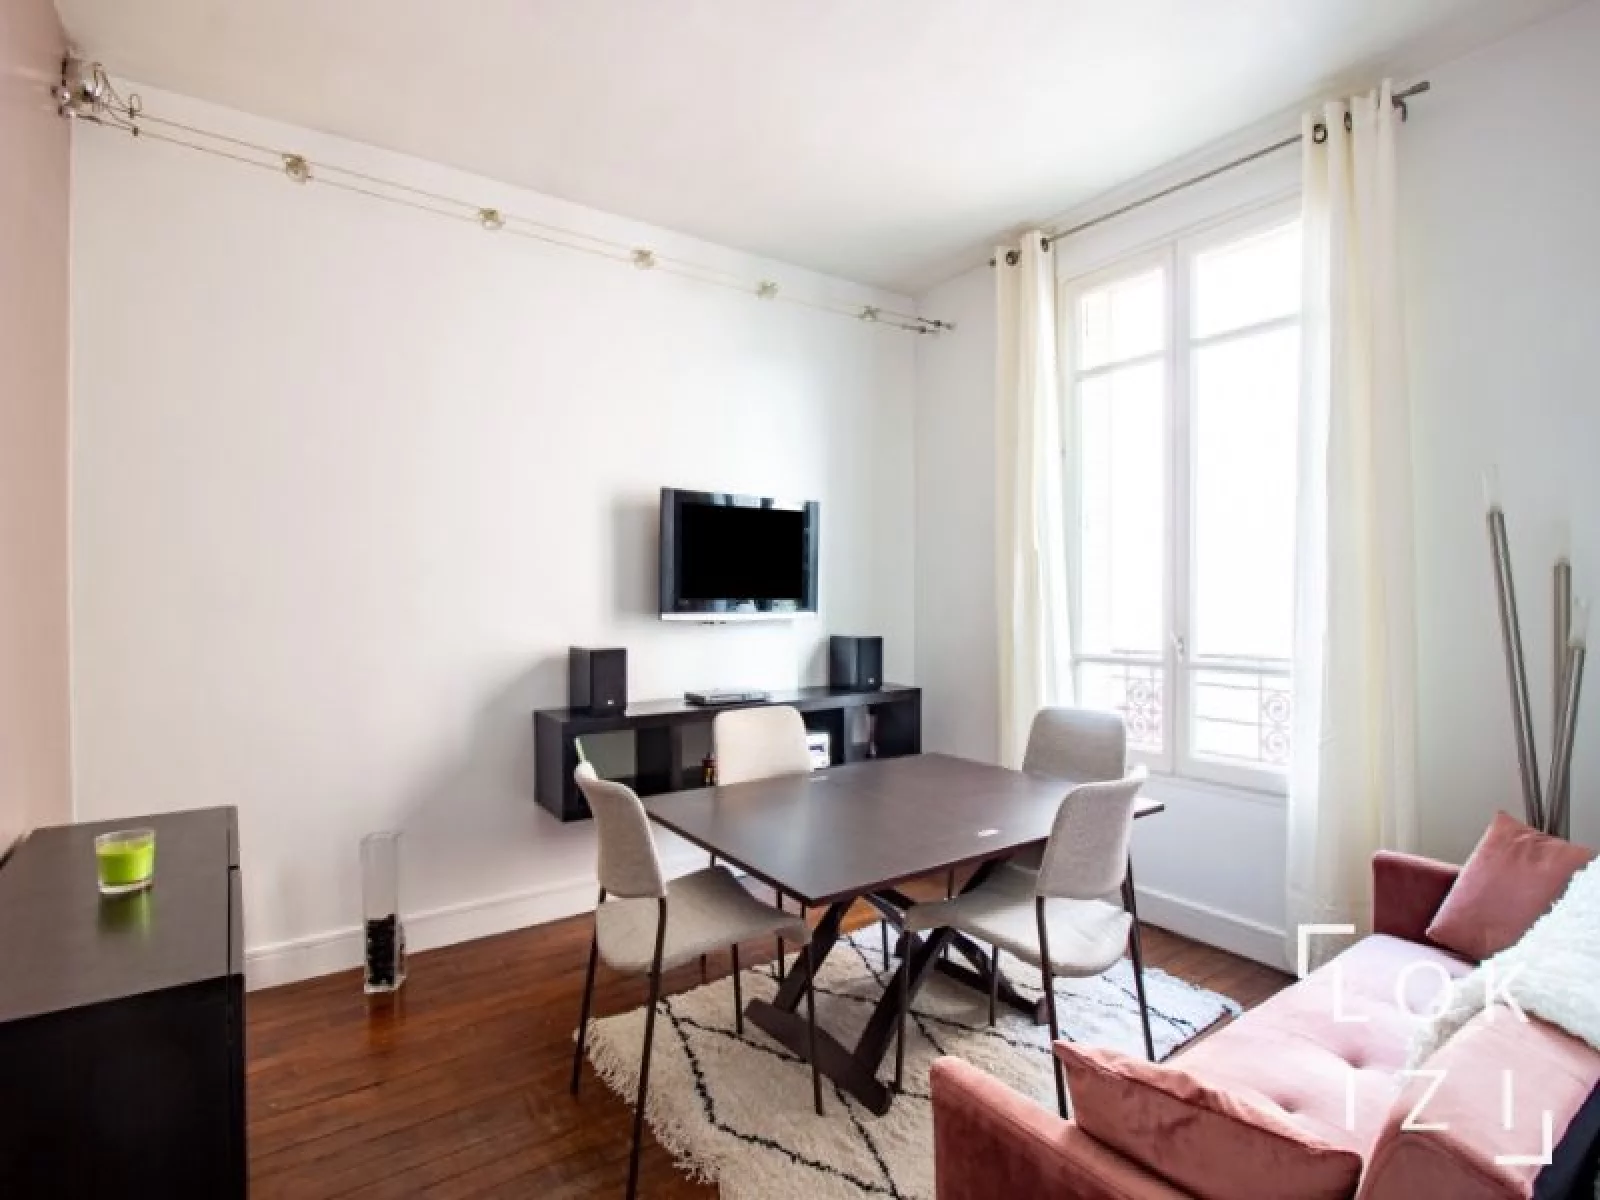 Location appartement meublé 2 pièces 42m² (Paris - Nanterre 92)